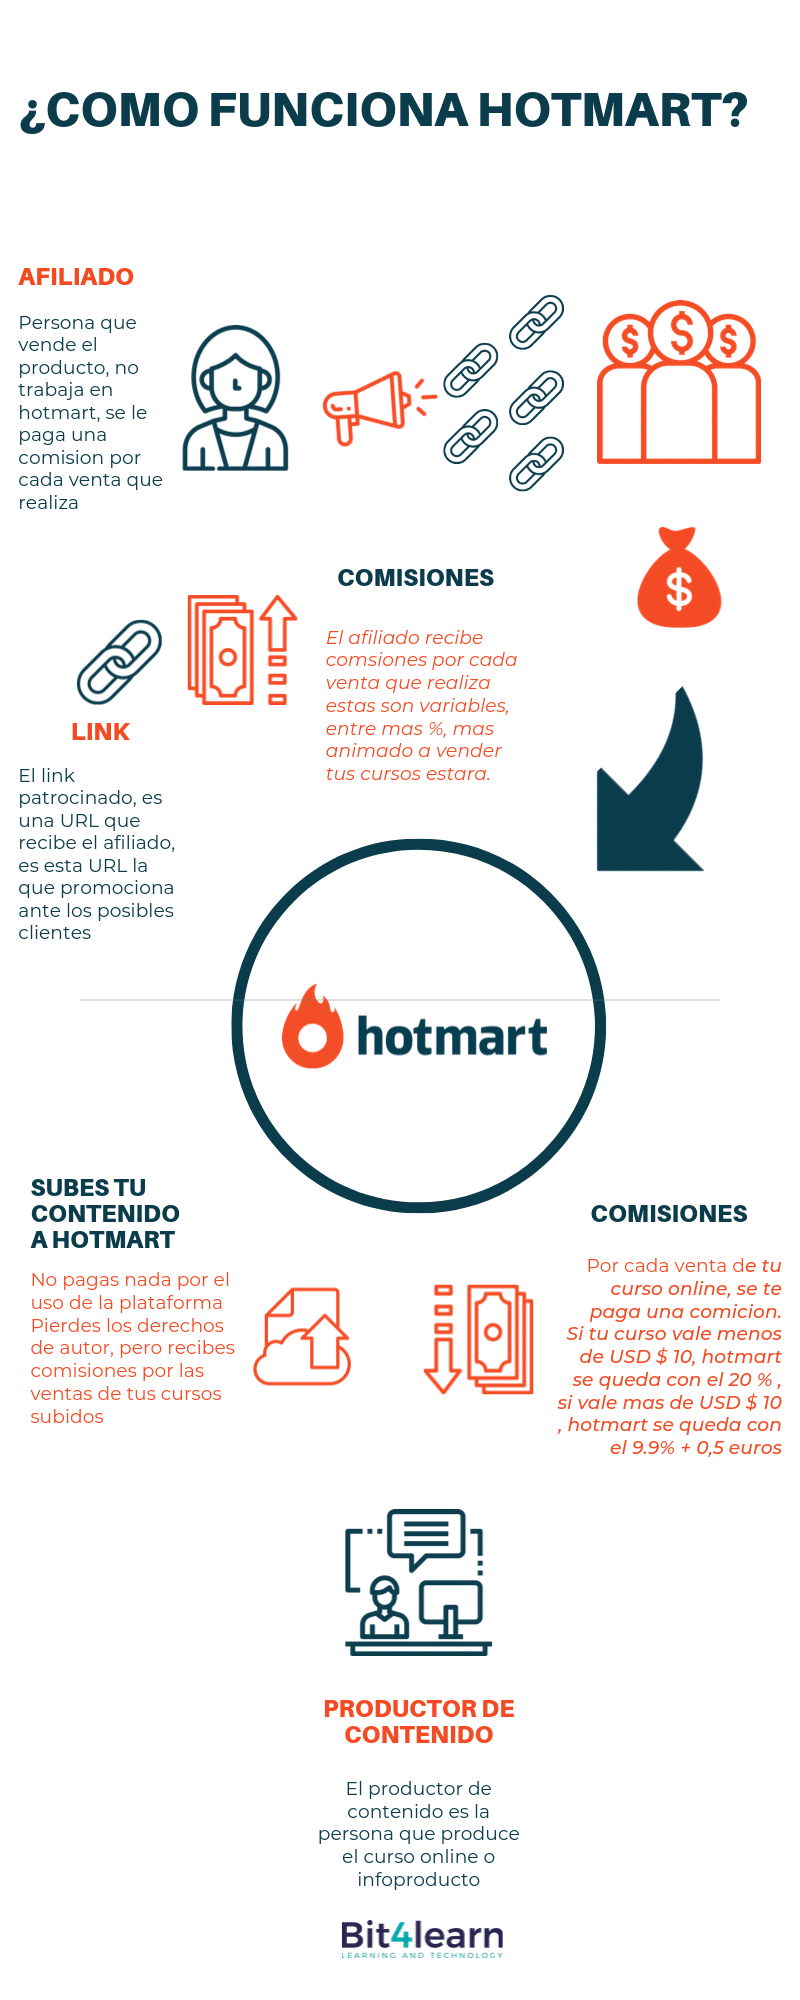 Hotmart es seguro y confiable? ¡Aprende más sobre Hotmart!